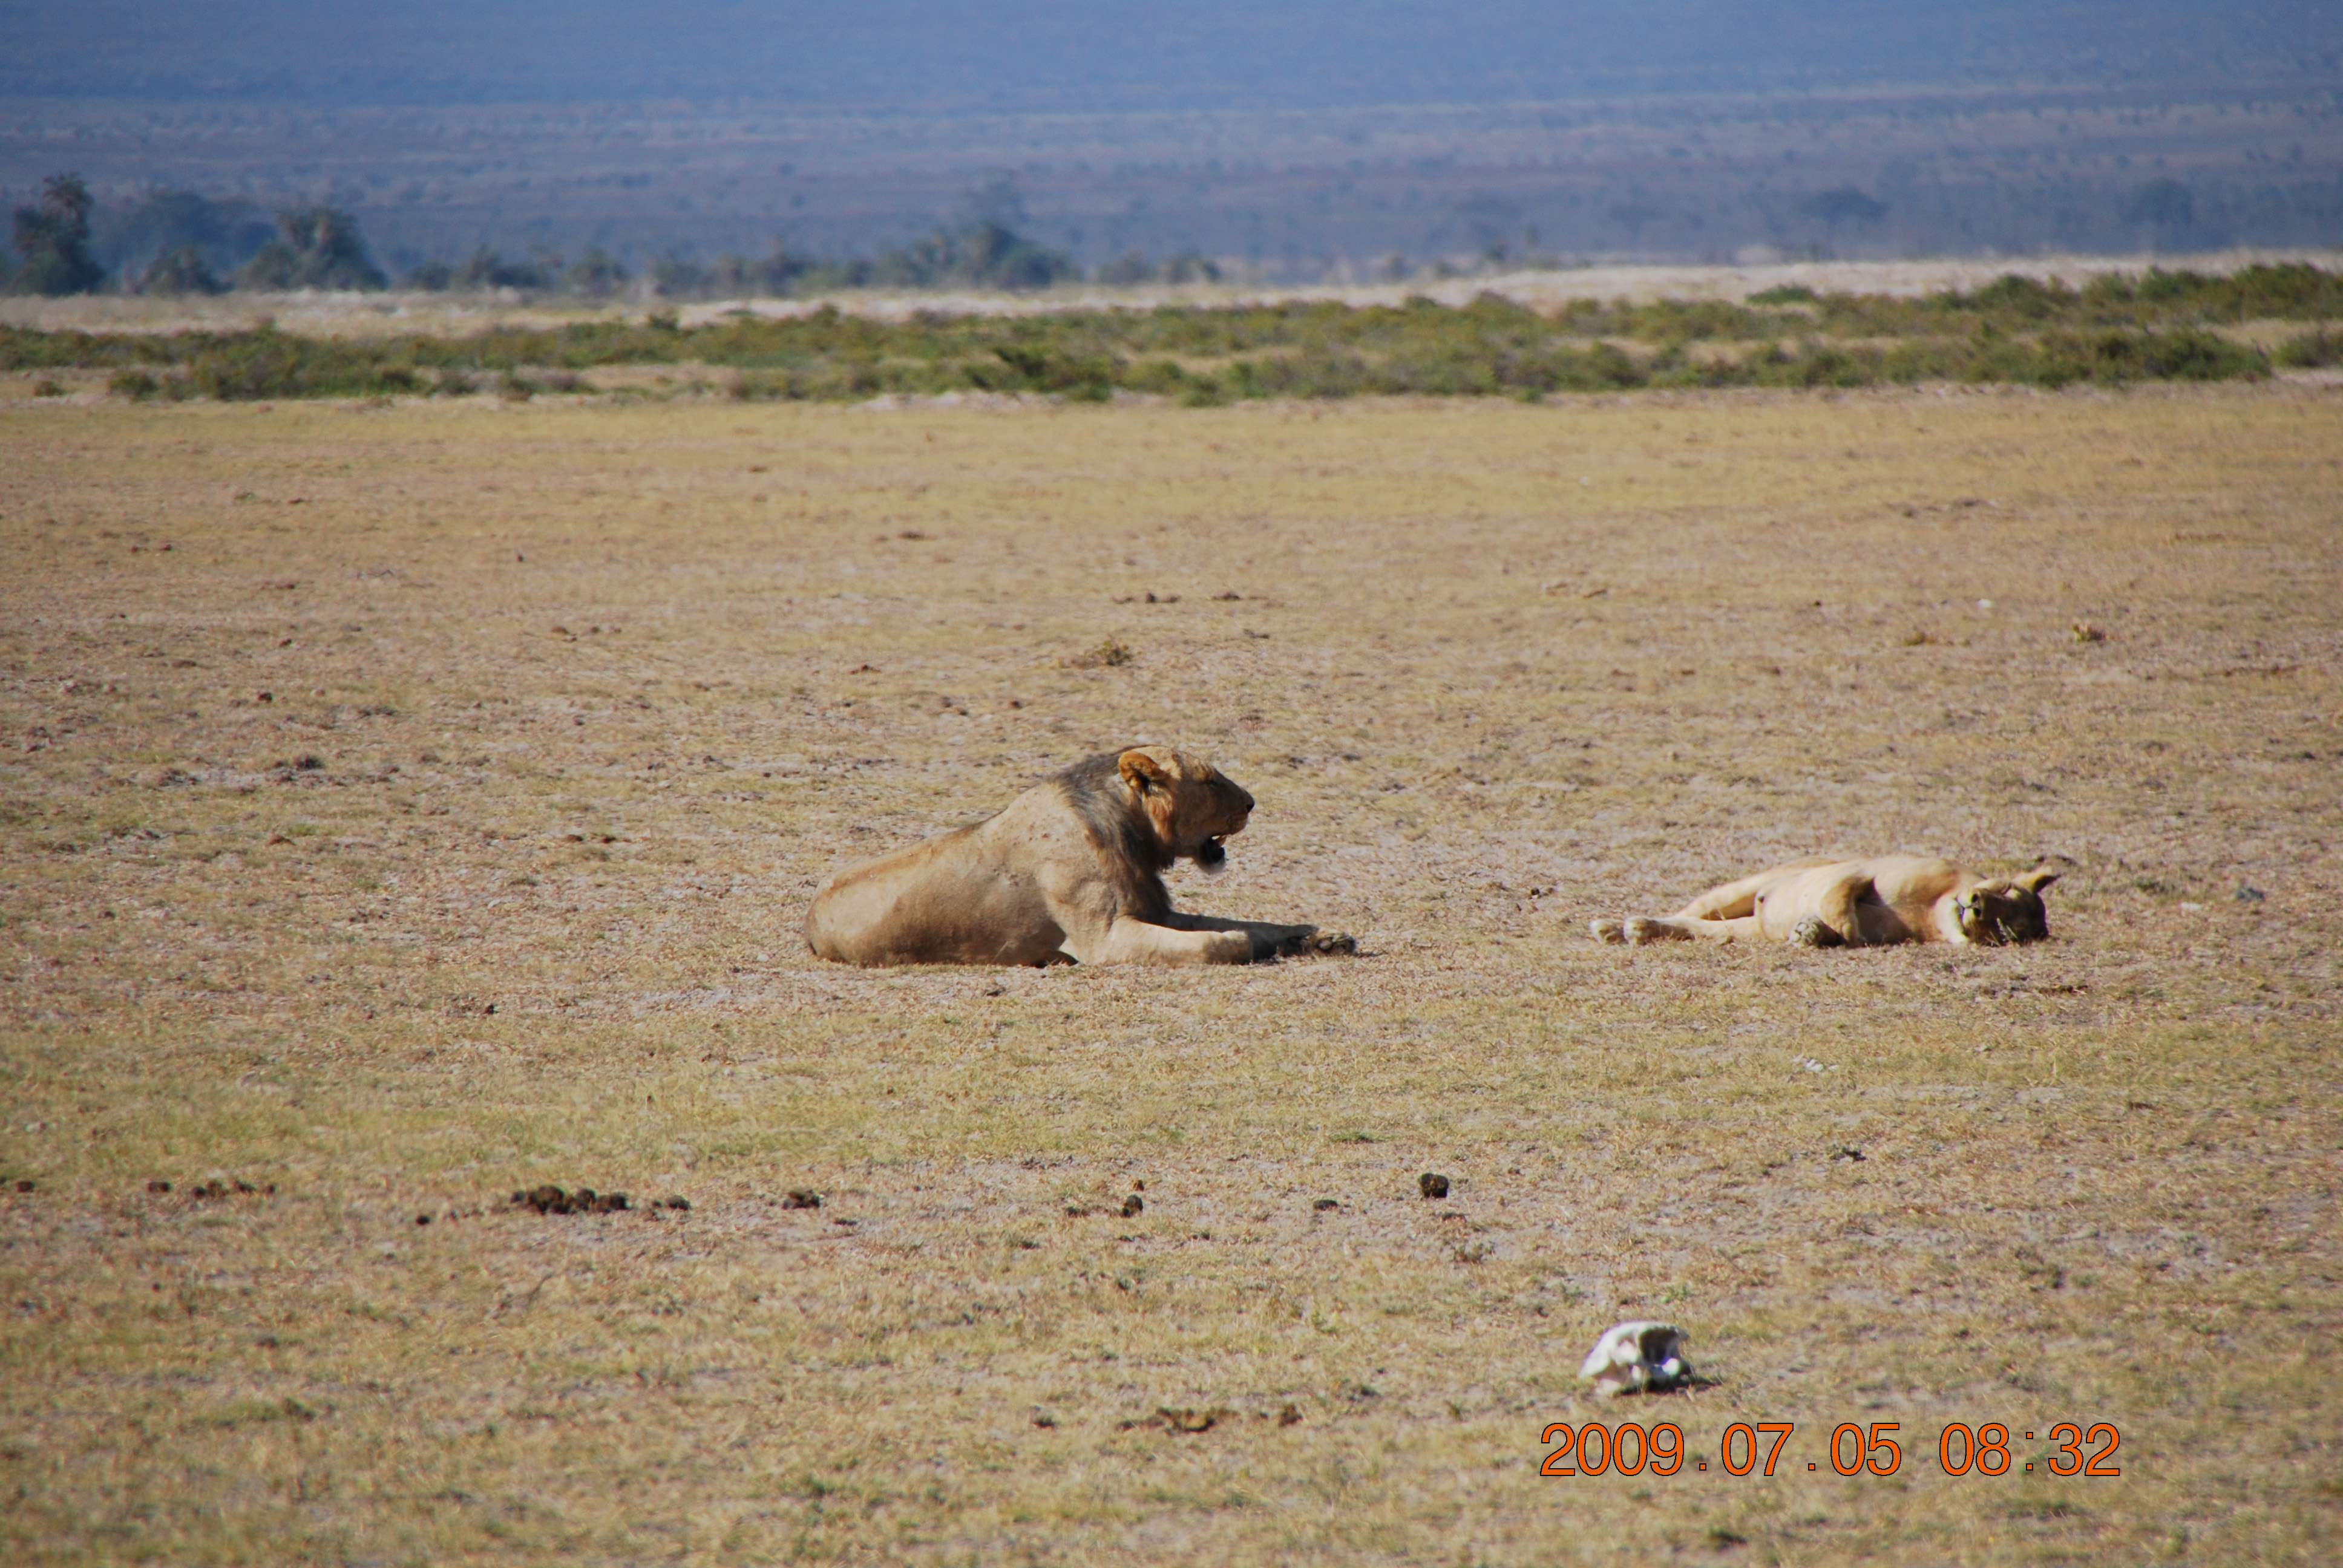 Kenia una experiencia inolvidable - Blogs de Kenia - Amboseli, el descubrimiento de Africa (2)